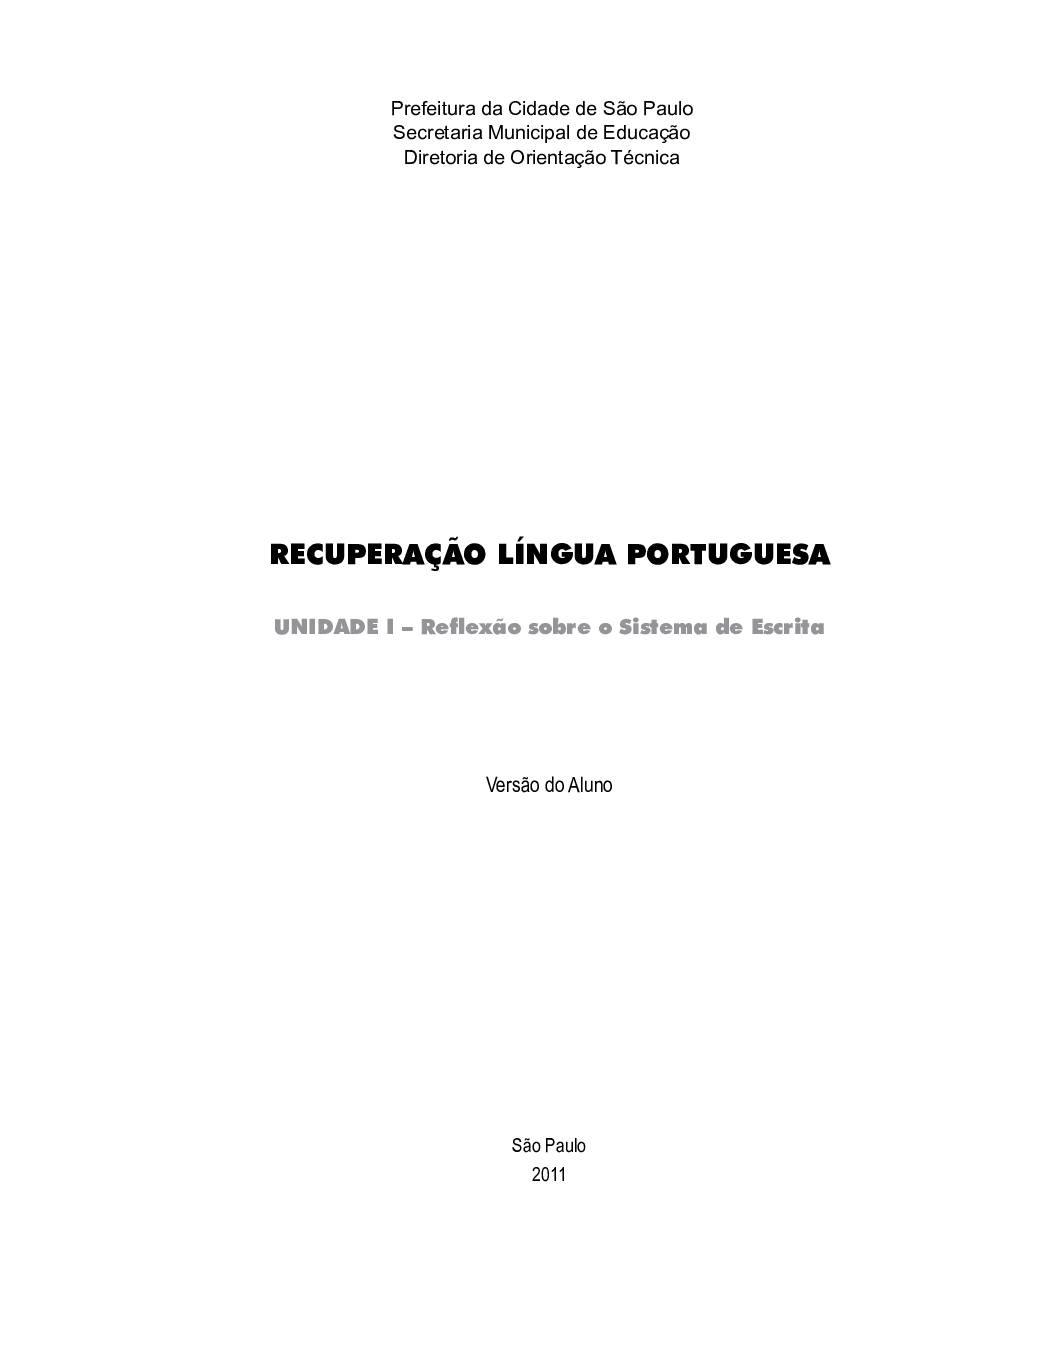 Material para os estudantes contendo atividades de recuperação de Língua Portuguesa.